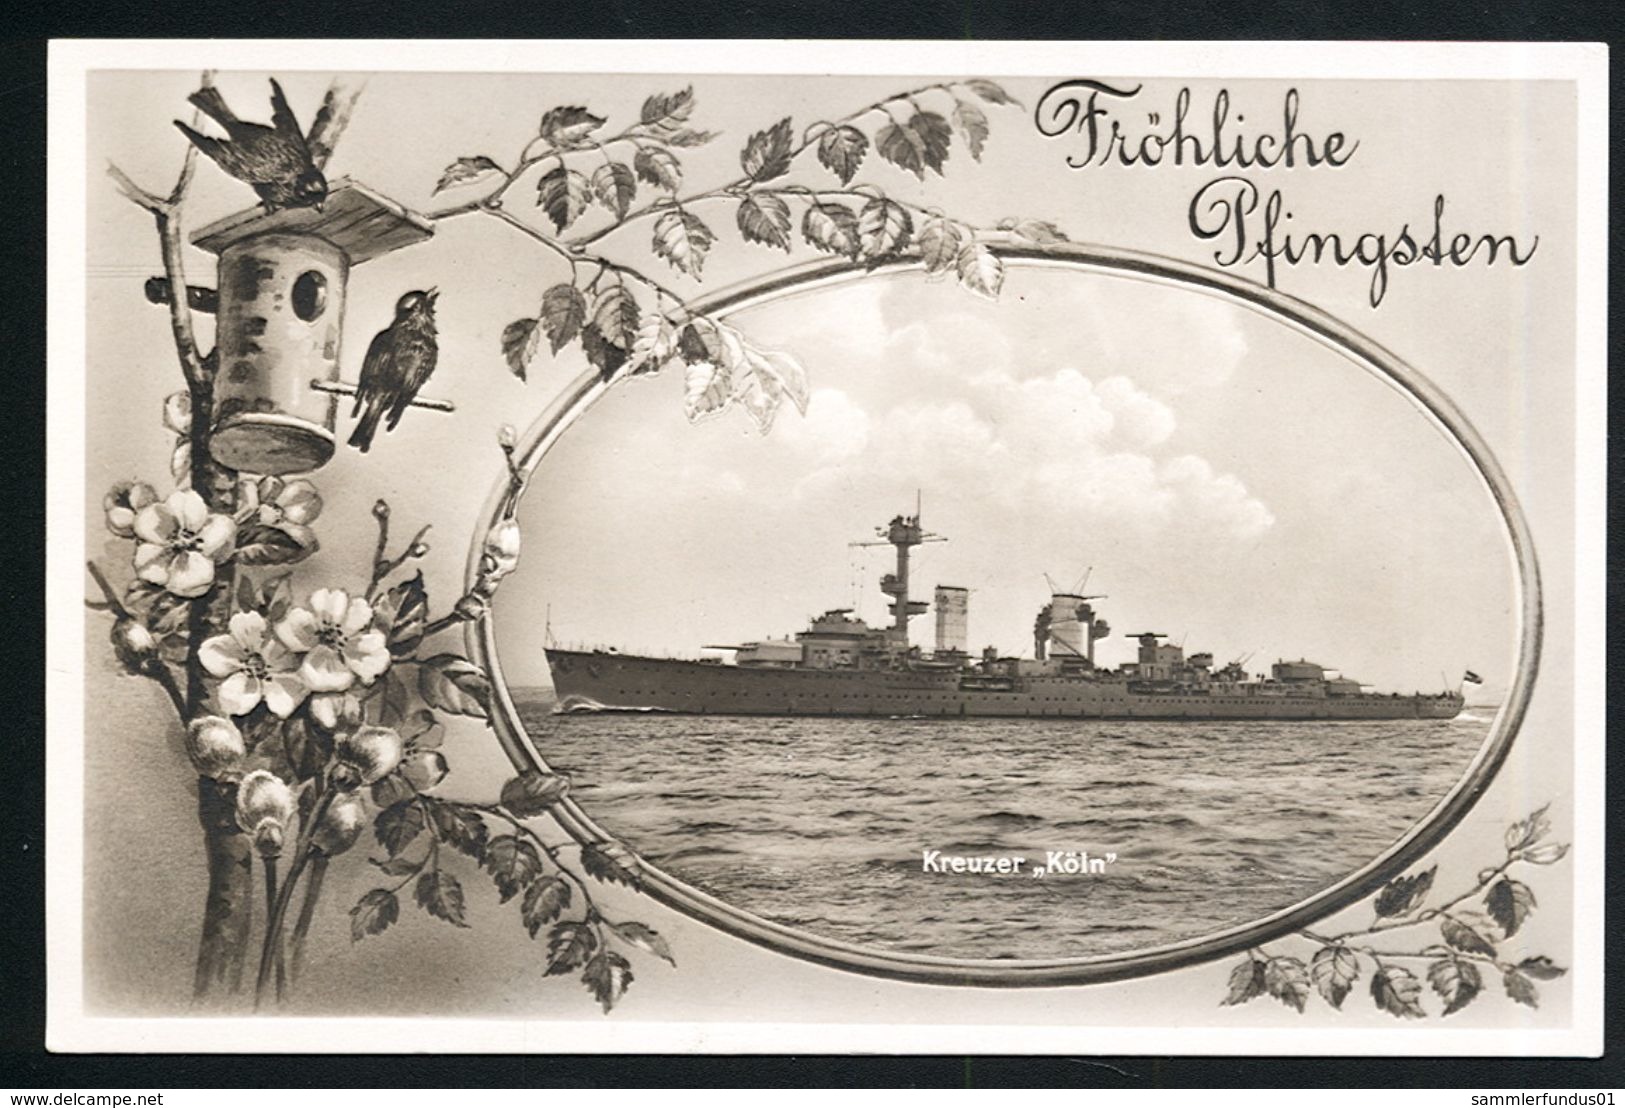 AK/CP Marine Kreuzer Köln  Reichsmarine  German Navy    Ungel/uncirc. Ca. 1932    Erhaltung/Cond.  1- / 2    Nr. 00308 - Guerre